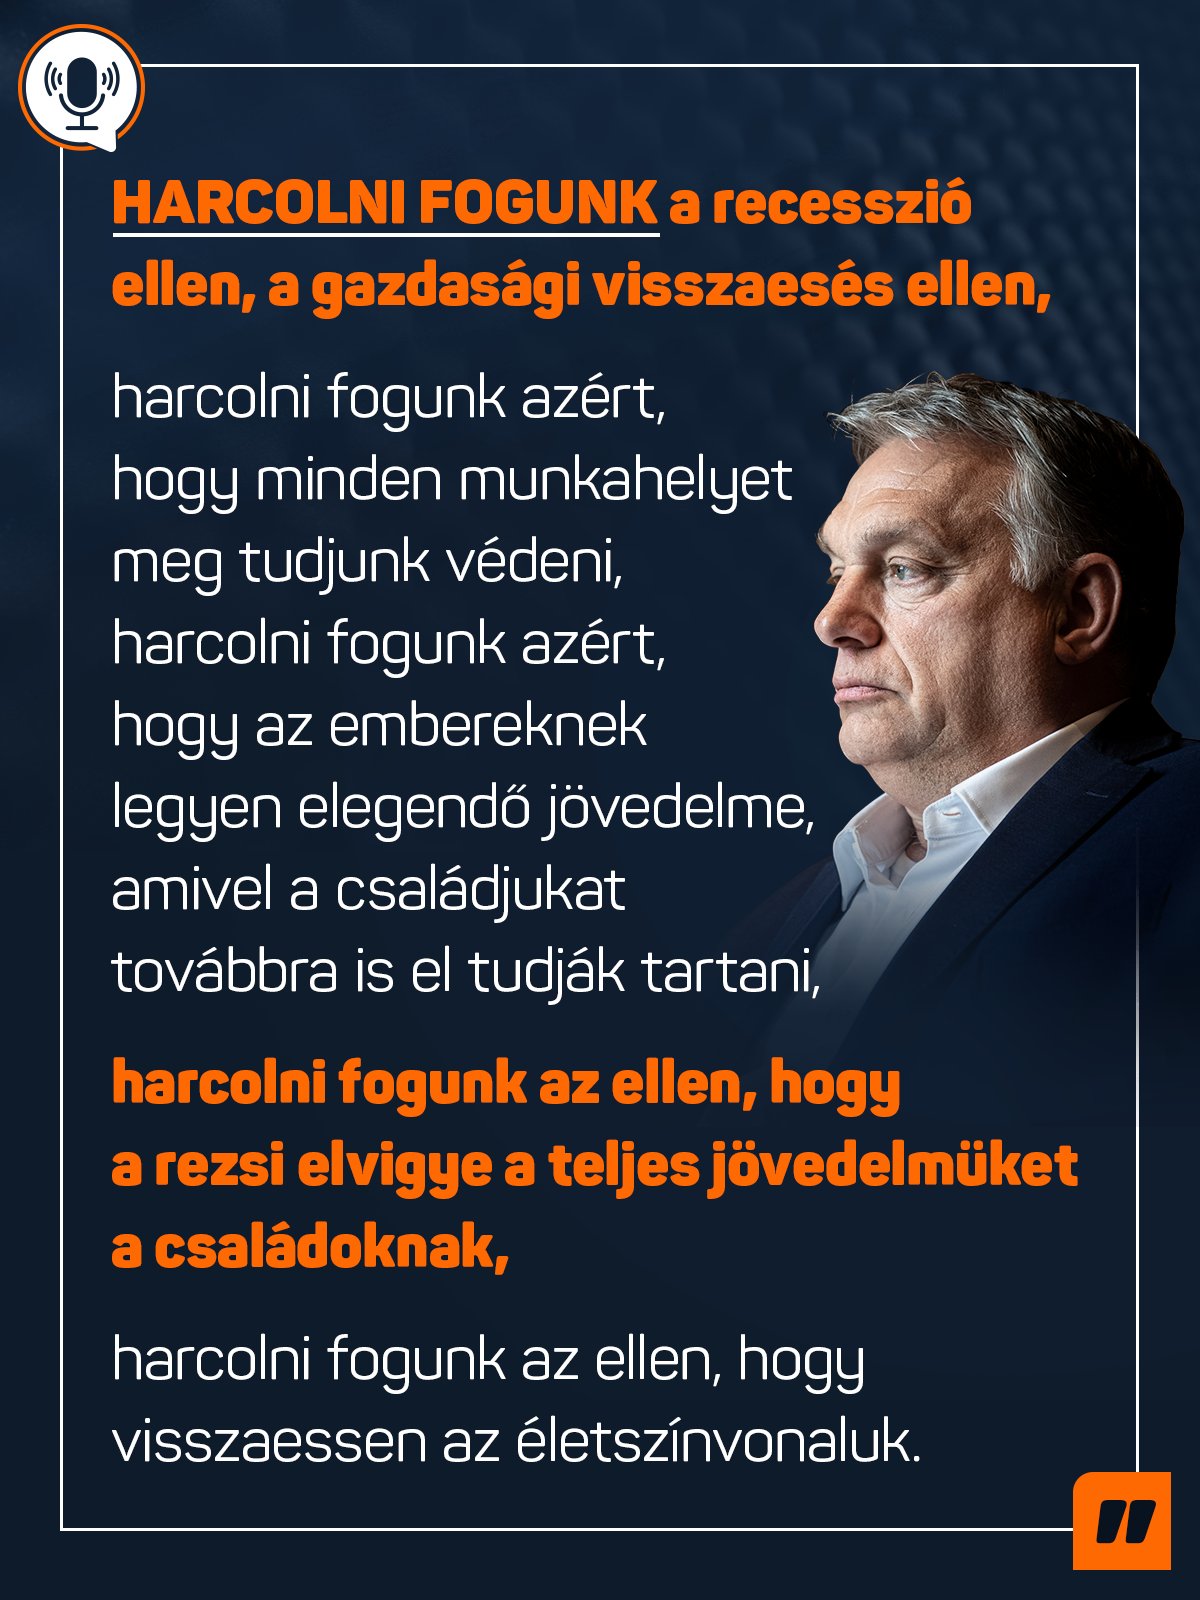 Harcolni fogunk a recesszió ellen, a gazdasági visszaesés ellen, harcolni fogunk azért, hogy minden munkahelyet meg tudjunk védeni, harcolni fogunk azért, hogy az embereknek legyen elegendő jövedelme, amivel a családjukat továbbra is el tudják tartani, harcolni fogunk az ellen, hogy a rezsi elvigye a teljes jövedelmüket a családoknak, harcolni fogunk az ellen, hogy visszaessen az életszínvonaluk – mondta Orbán Viktor a Kossuth Rádióban.